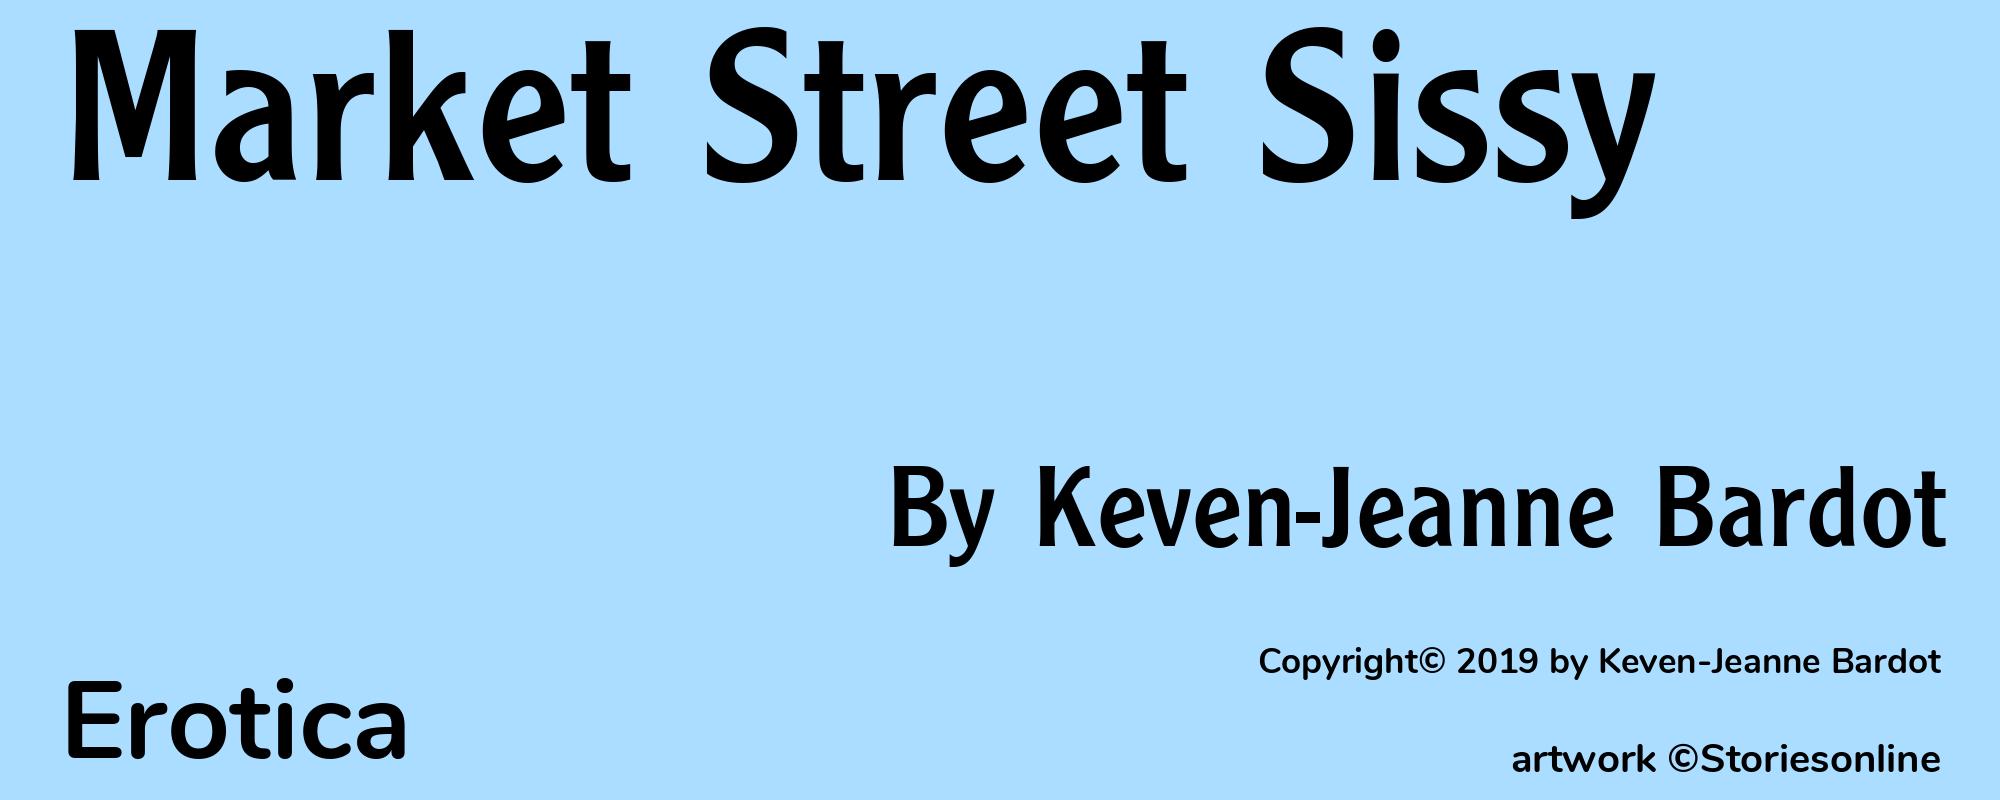 Market Street Sissy - Cover